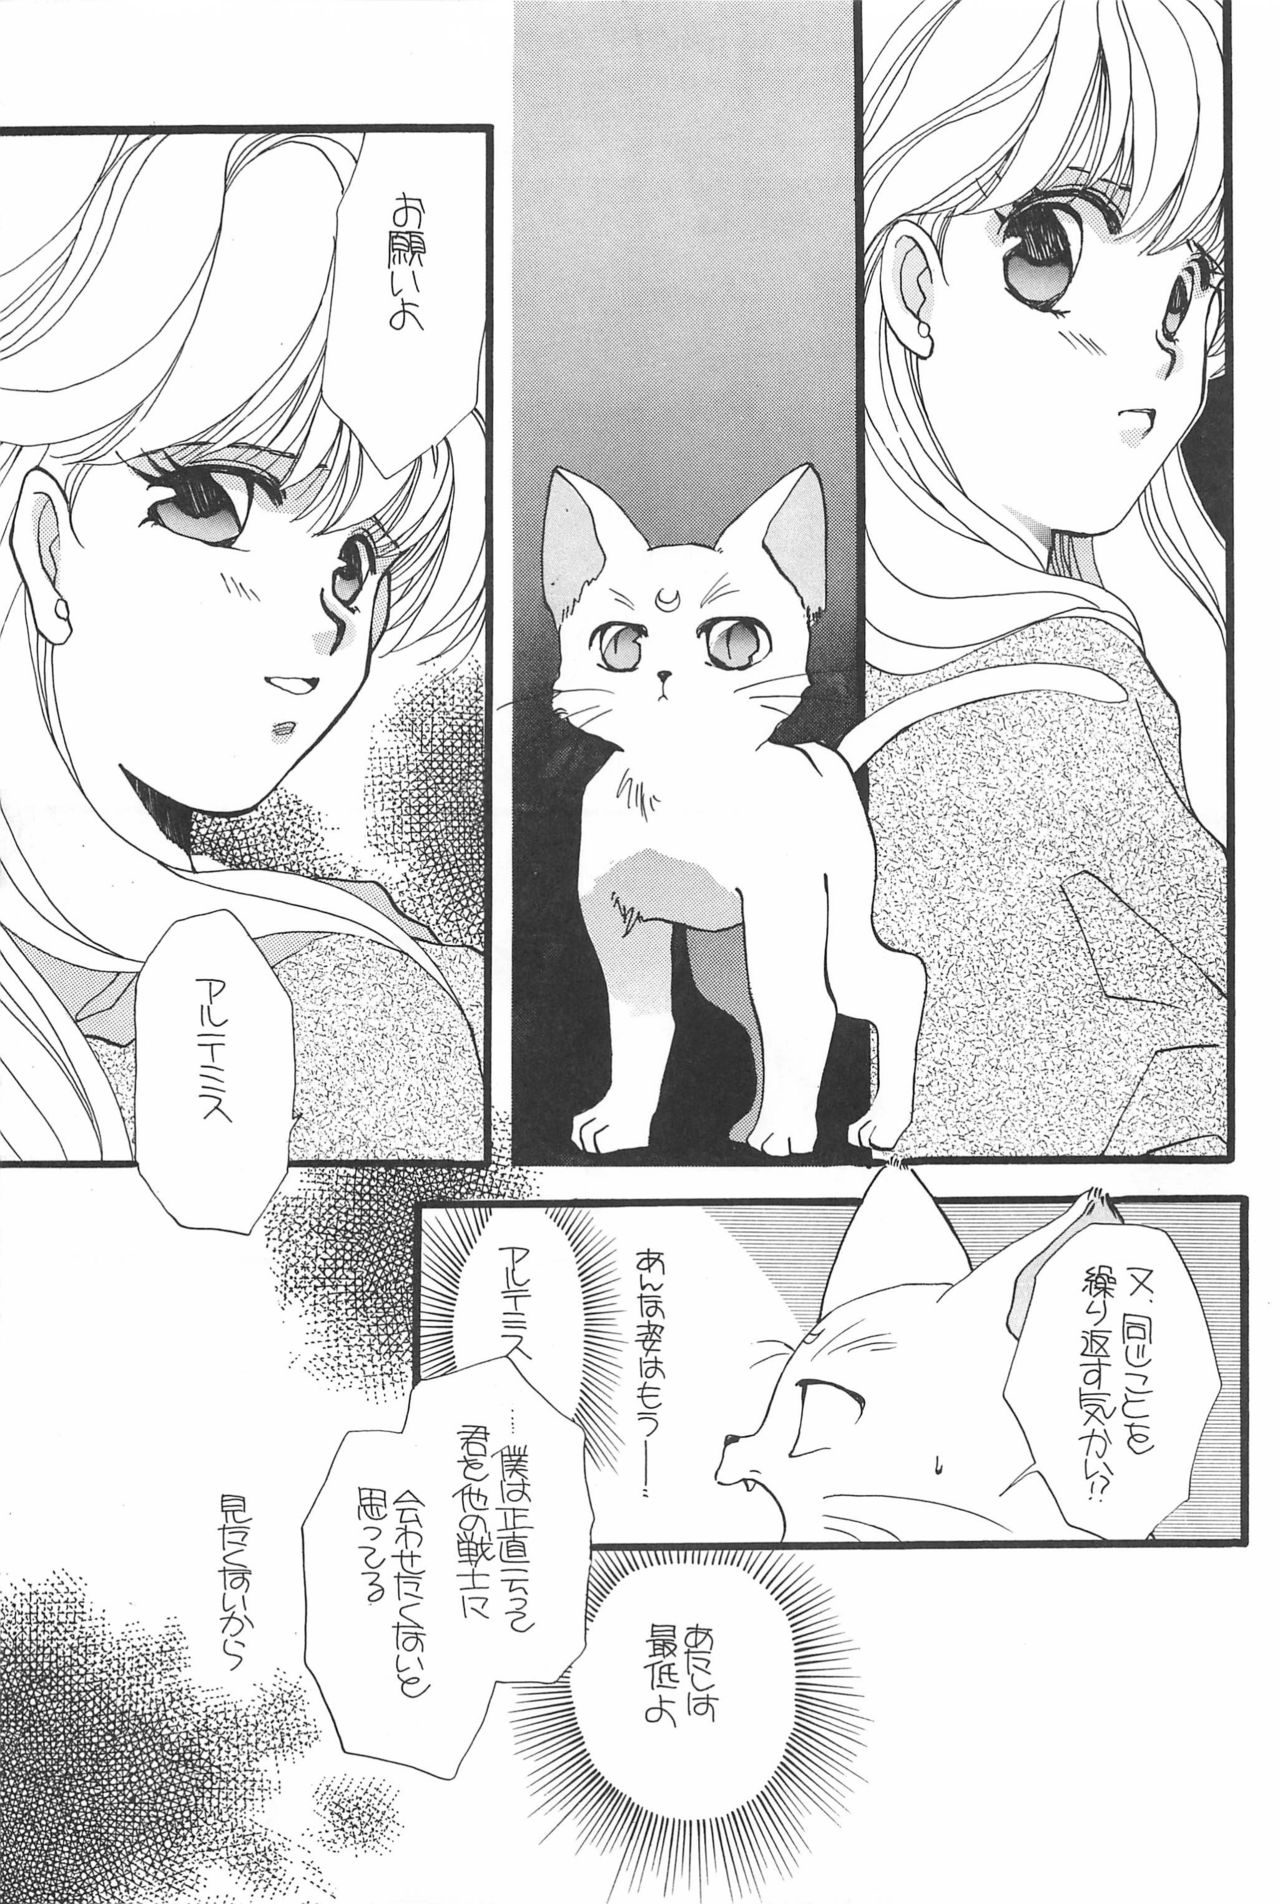 [Hello World (Muttri Moony)] Kaze no You ni Yume no You ni - Sailor Moon Collection (Sailor Moon) 82